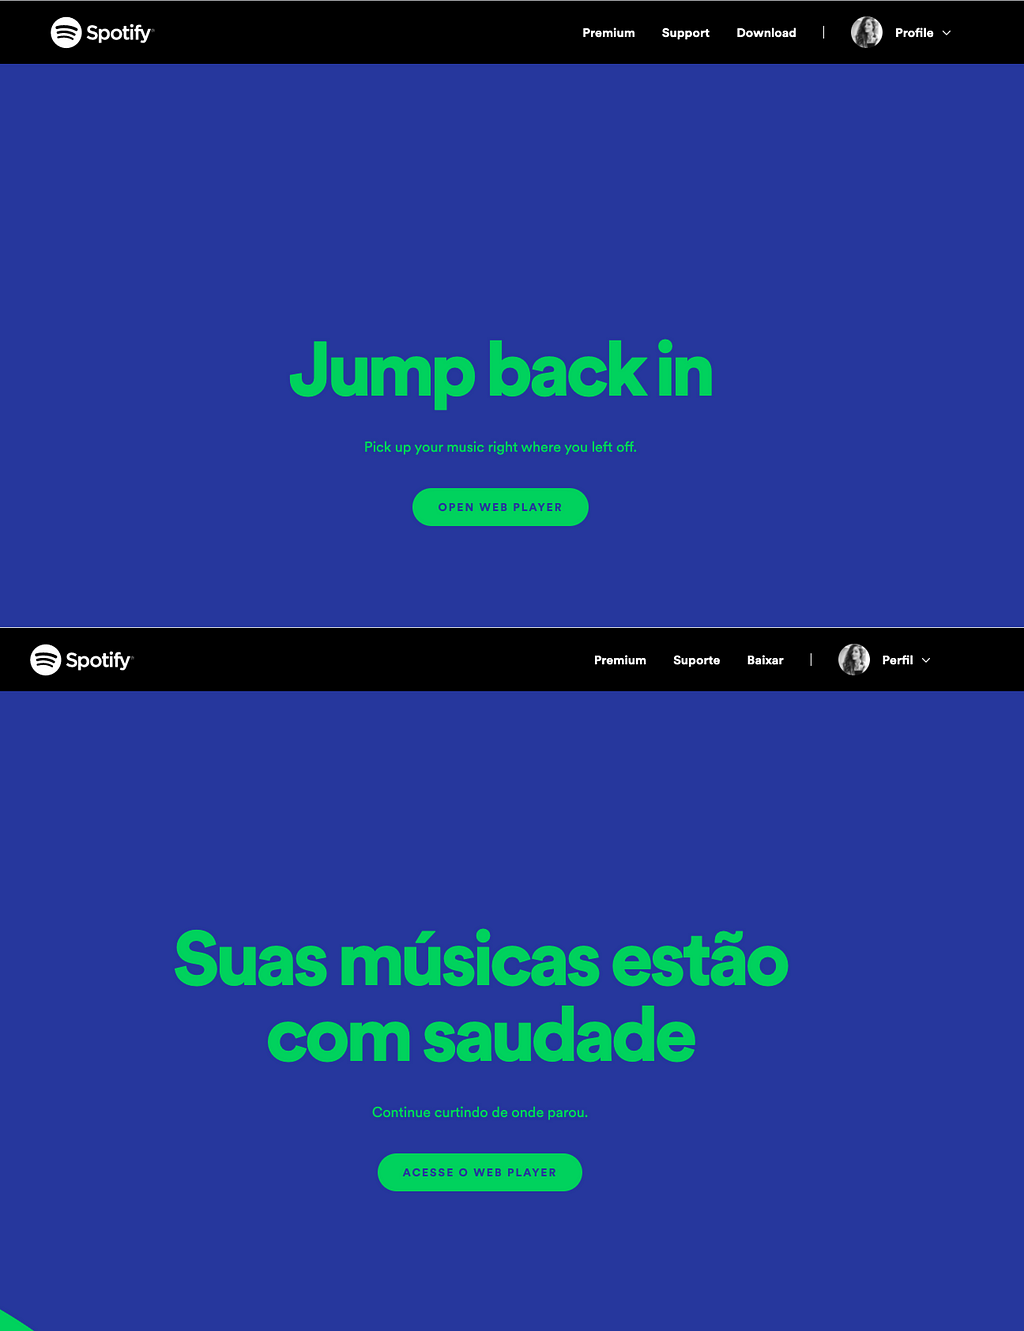 Acervo pessoal | Imagem: telas de acesso ao web player do Spotify nos idiomas Inglês e Português.